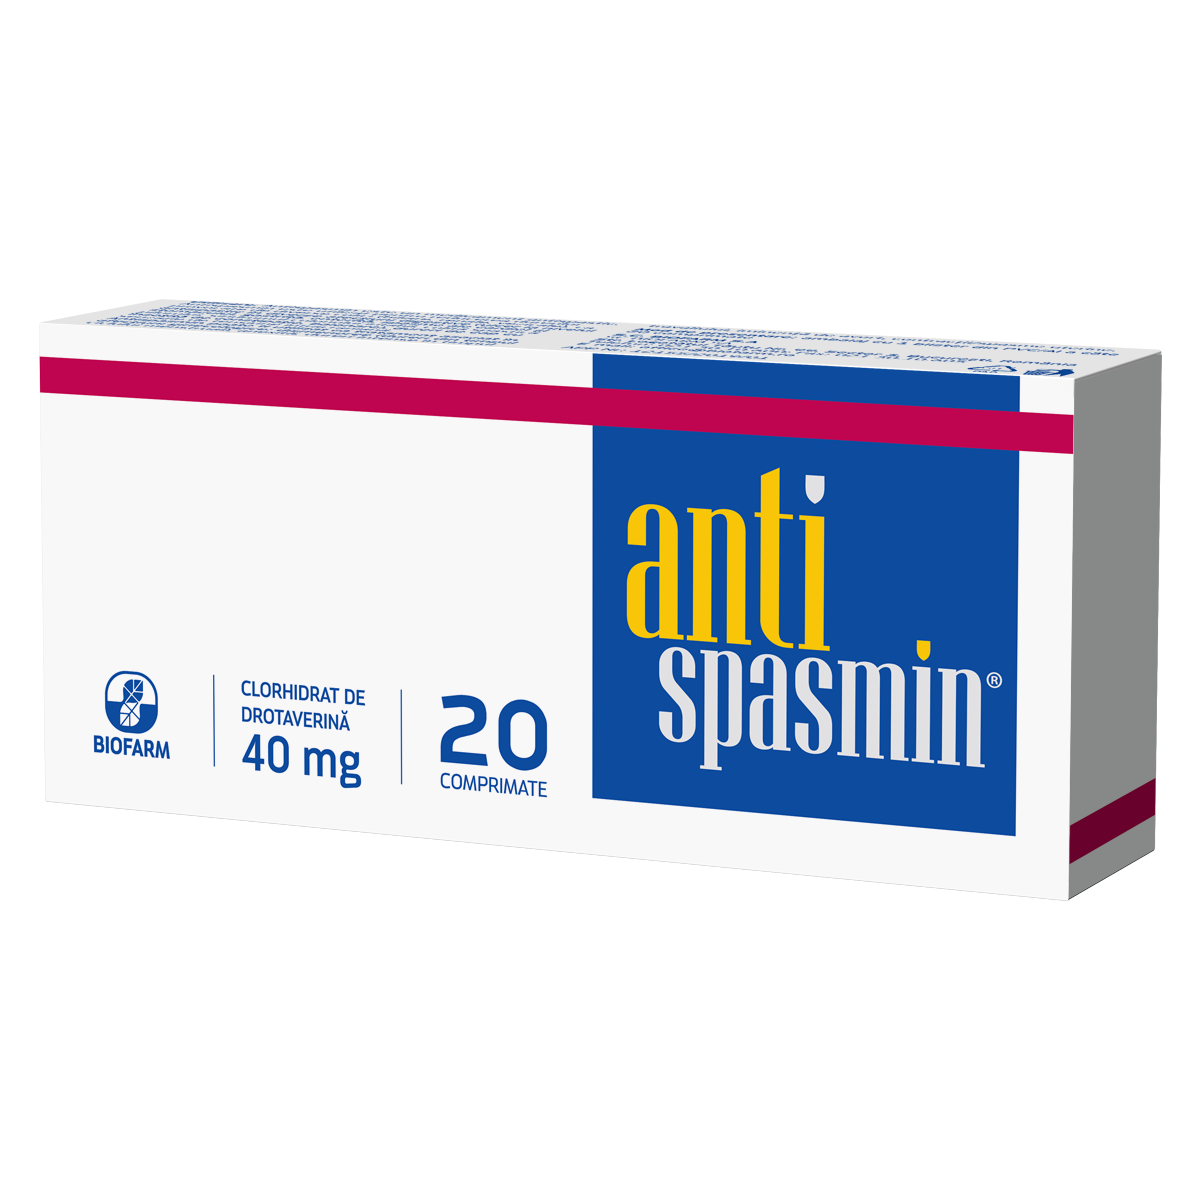 Antispastice - Antispasmin, 20 comprimate, Biofarm, sinapis.ro